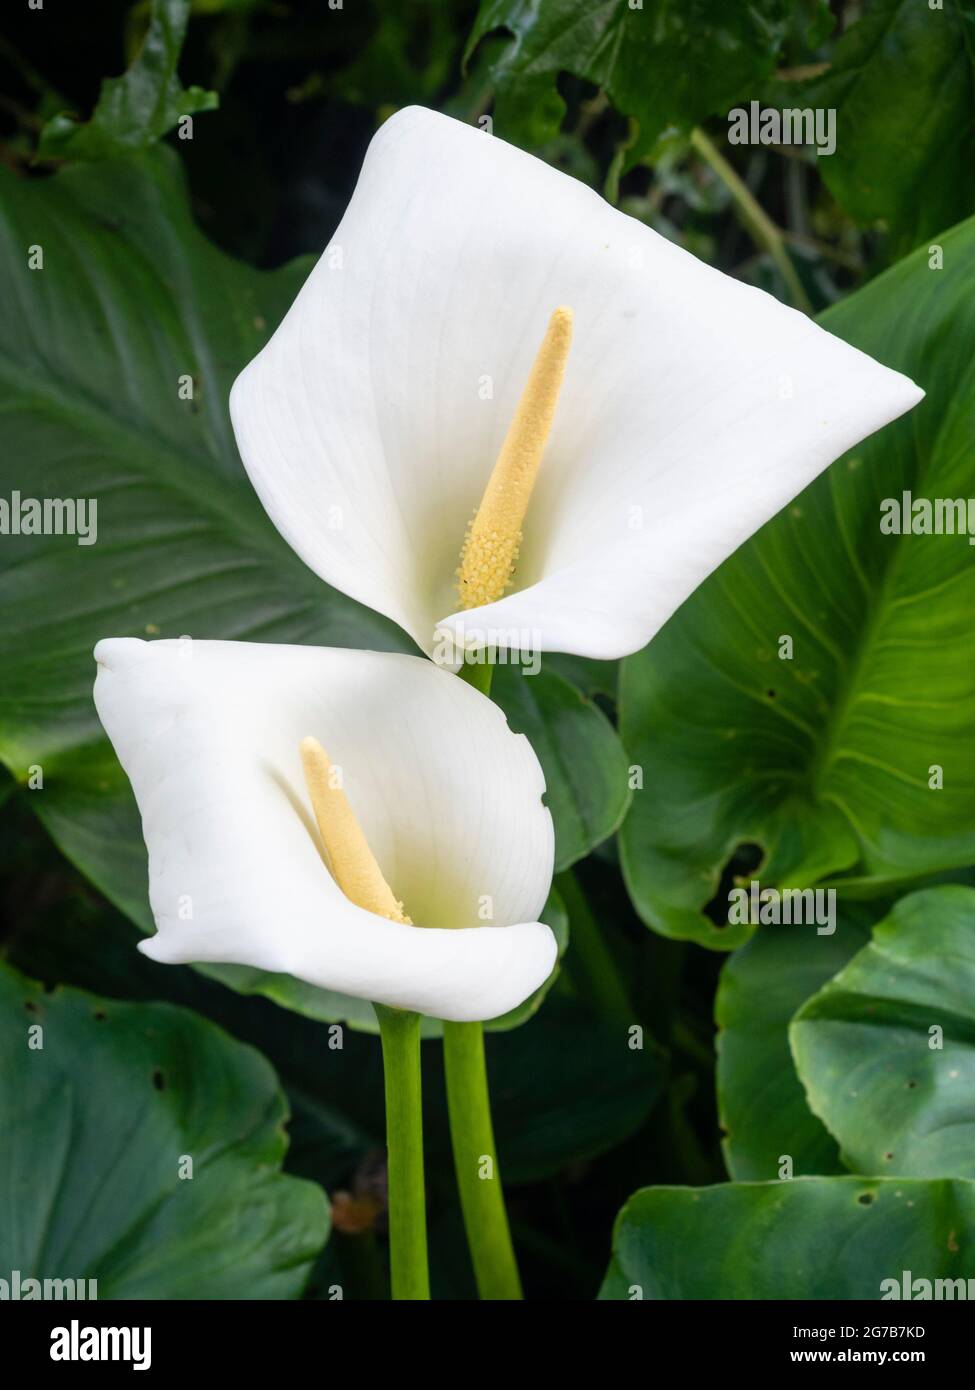 Spae blanche et spadix jaune du plus gros des nénuphars à fleurs blanches, Zantedeschia aethiopica 'Crowborough' Banque D'Images